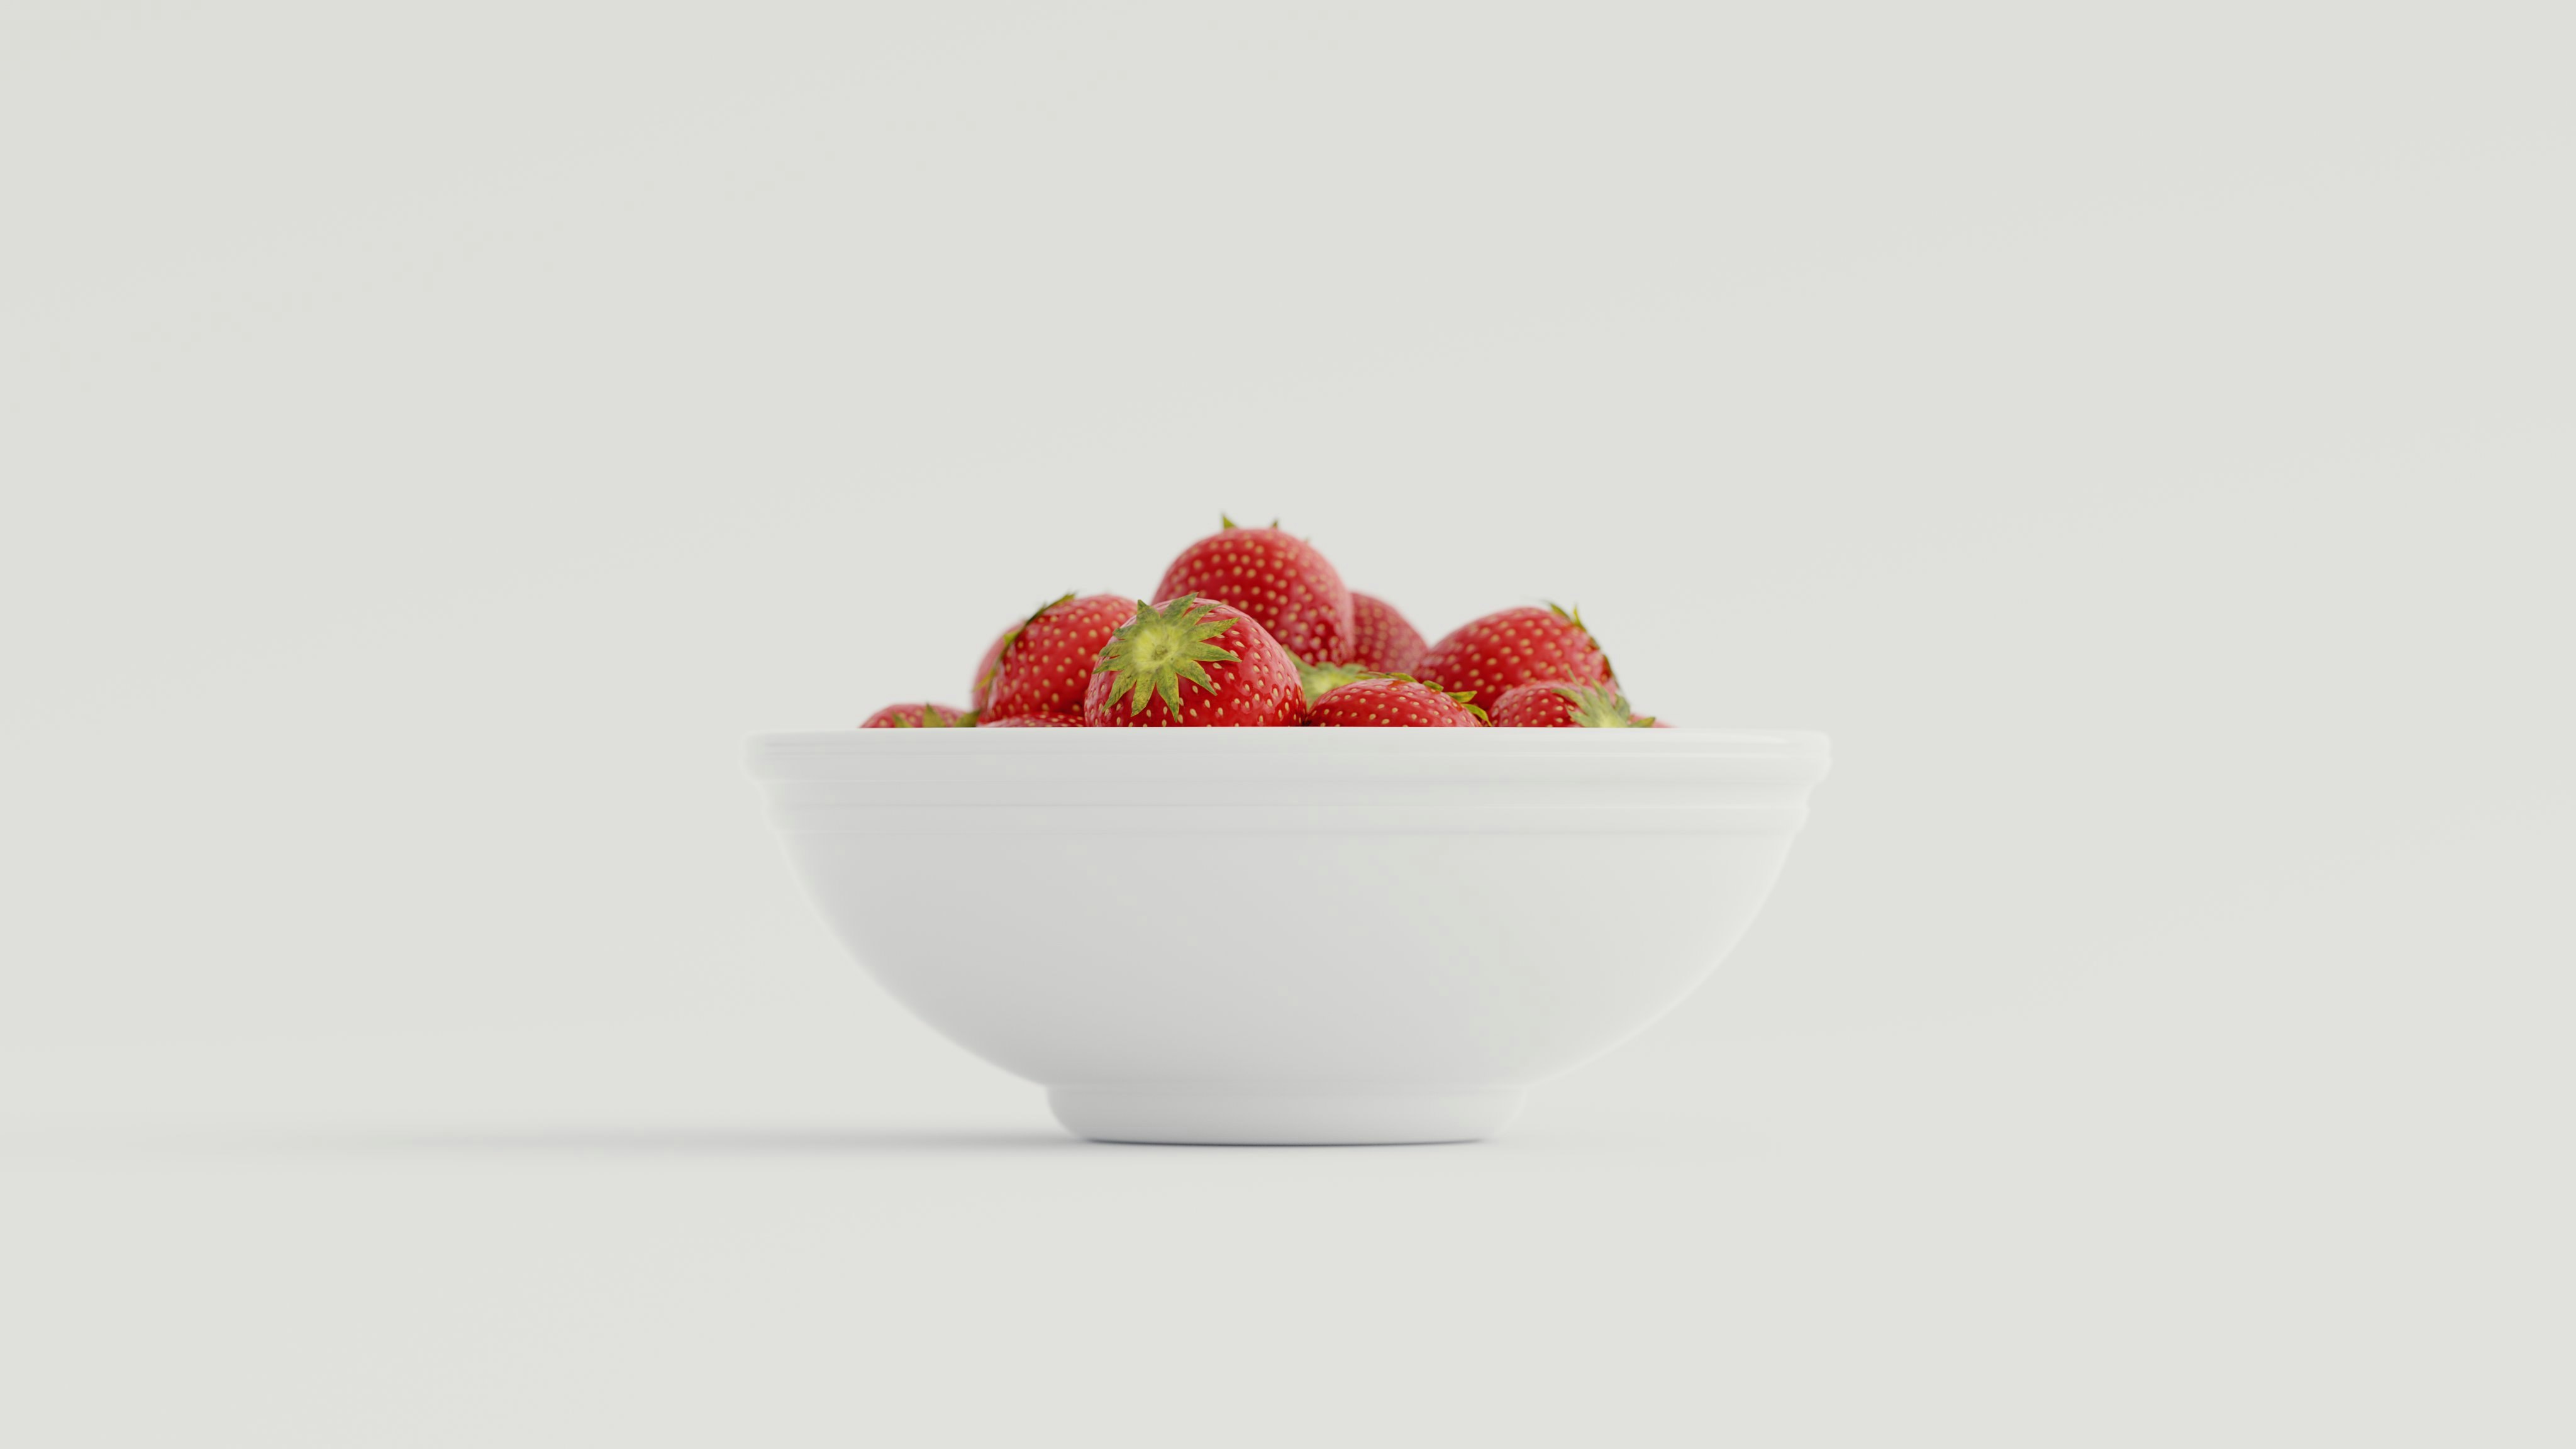 strawberries in white ceramic bowl